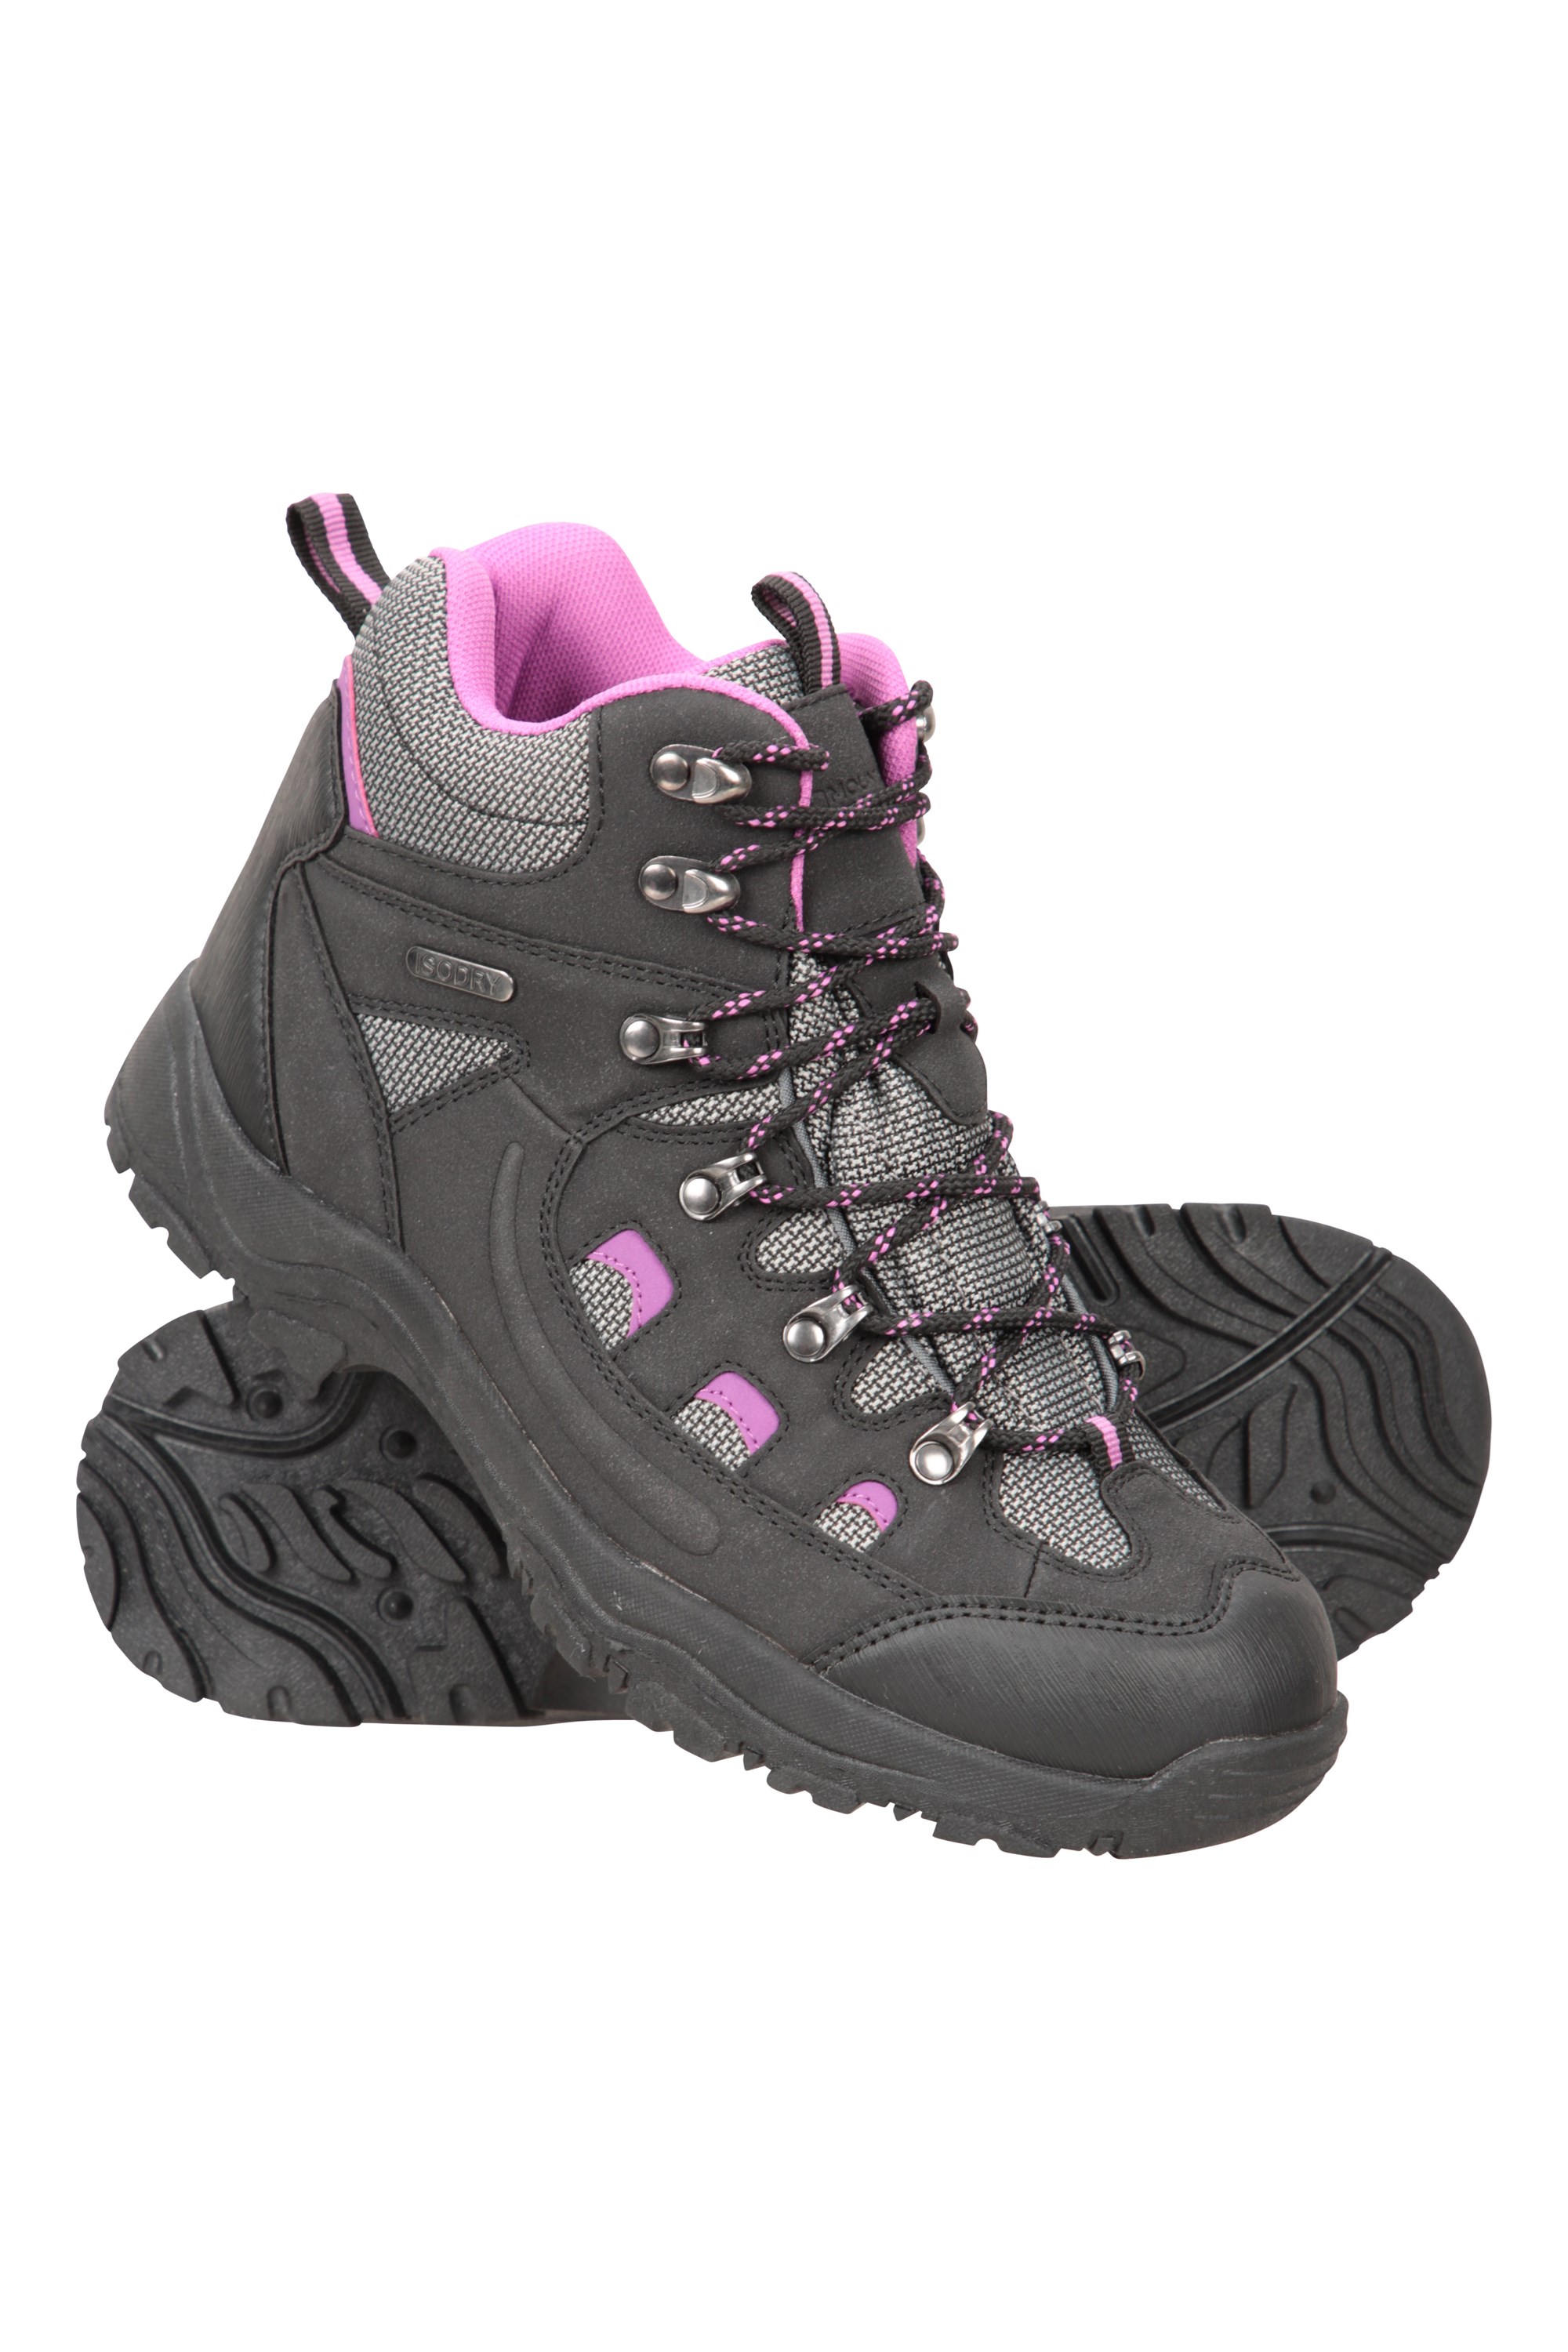 Botines Transpirables Mountain Warehouse Botas cómodas McLeod para Mujer Botas de montaña Resistentes Zapatos para Caminar Ligeros y Acolchados 